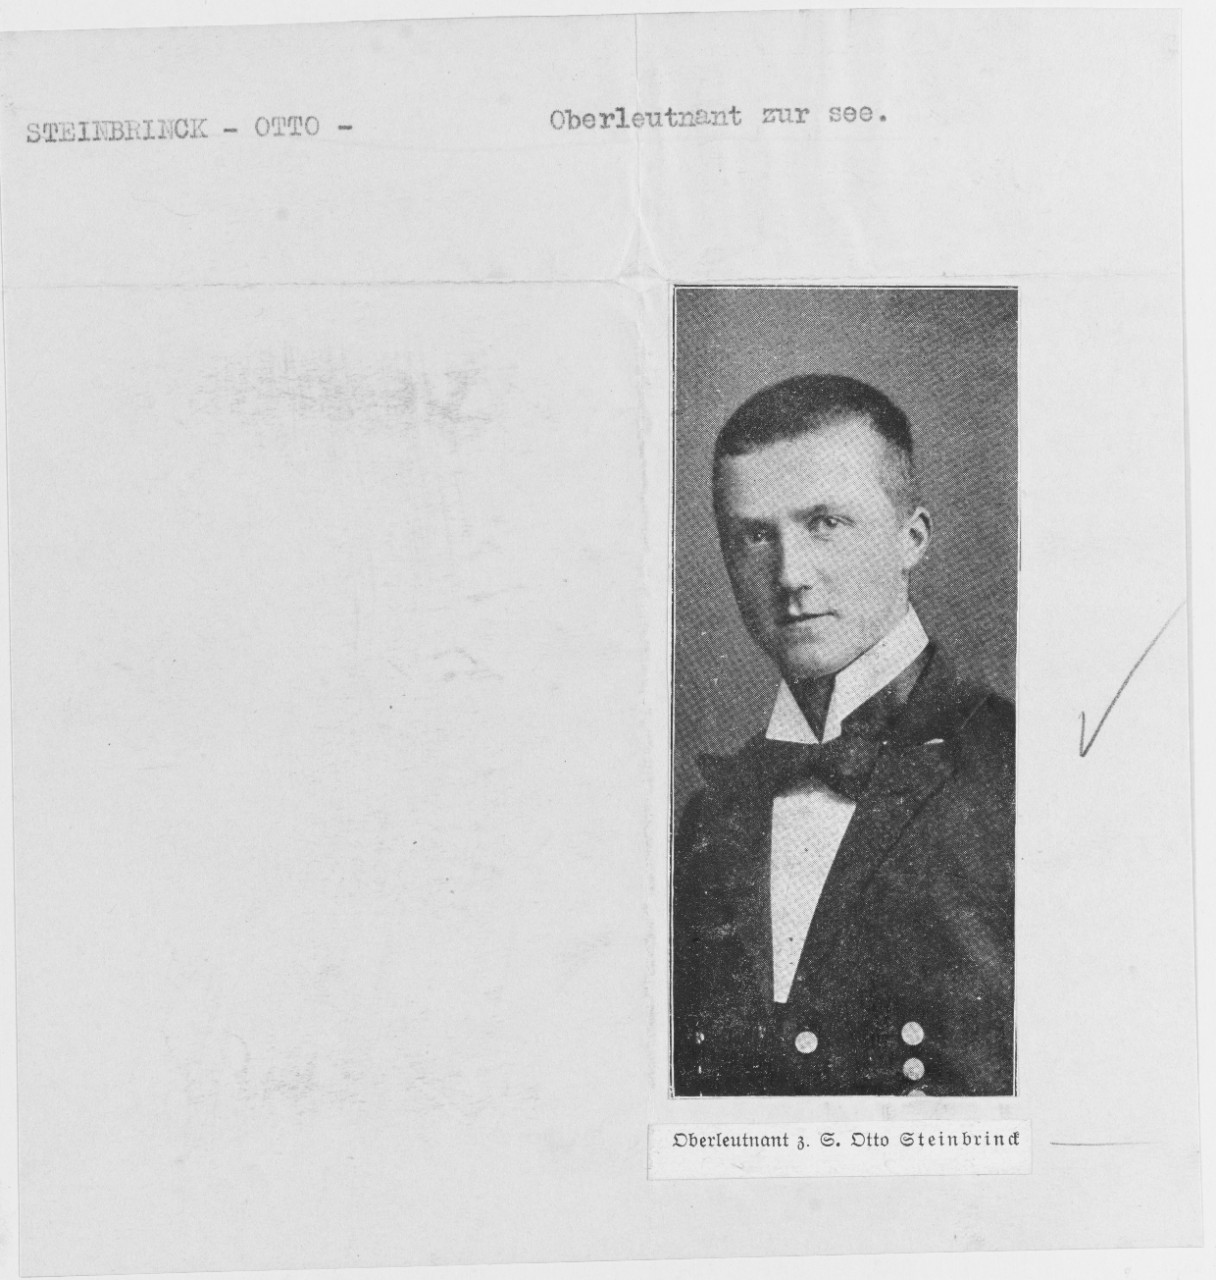 Oberleutnant zur see Otto Steinbrinck. German Submarine Commander.